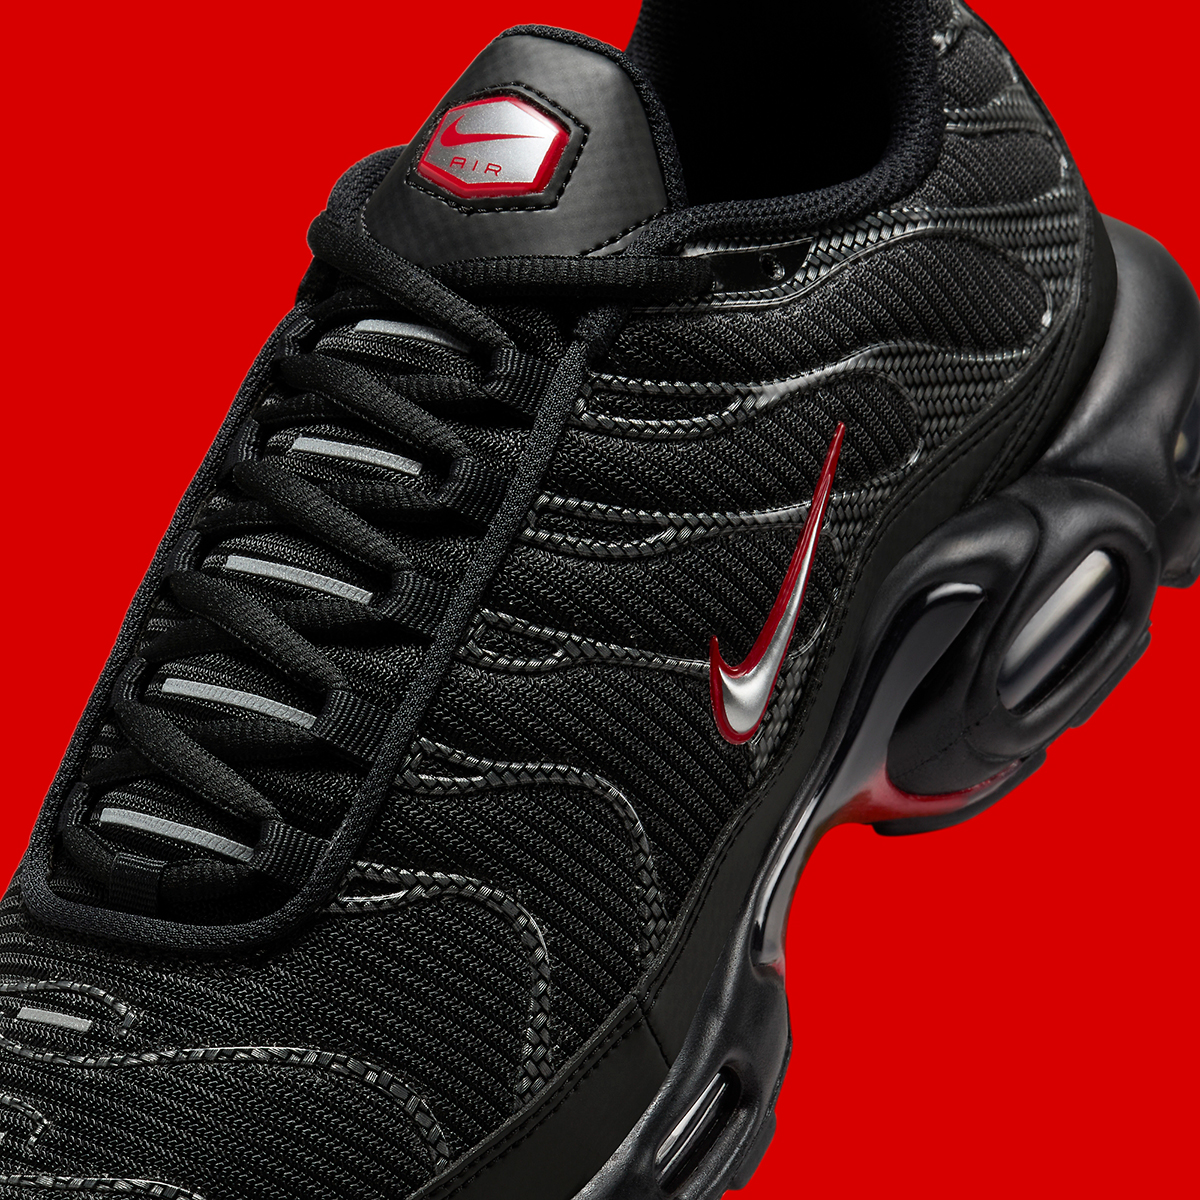 Nike nike air max 270 sko til store barn white Black Red Carbon Fiber Hf4293 001 6